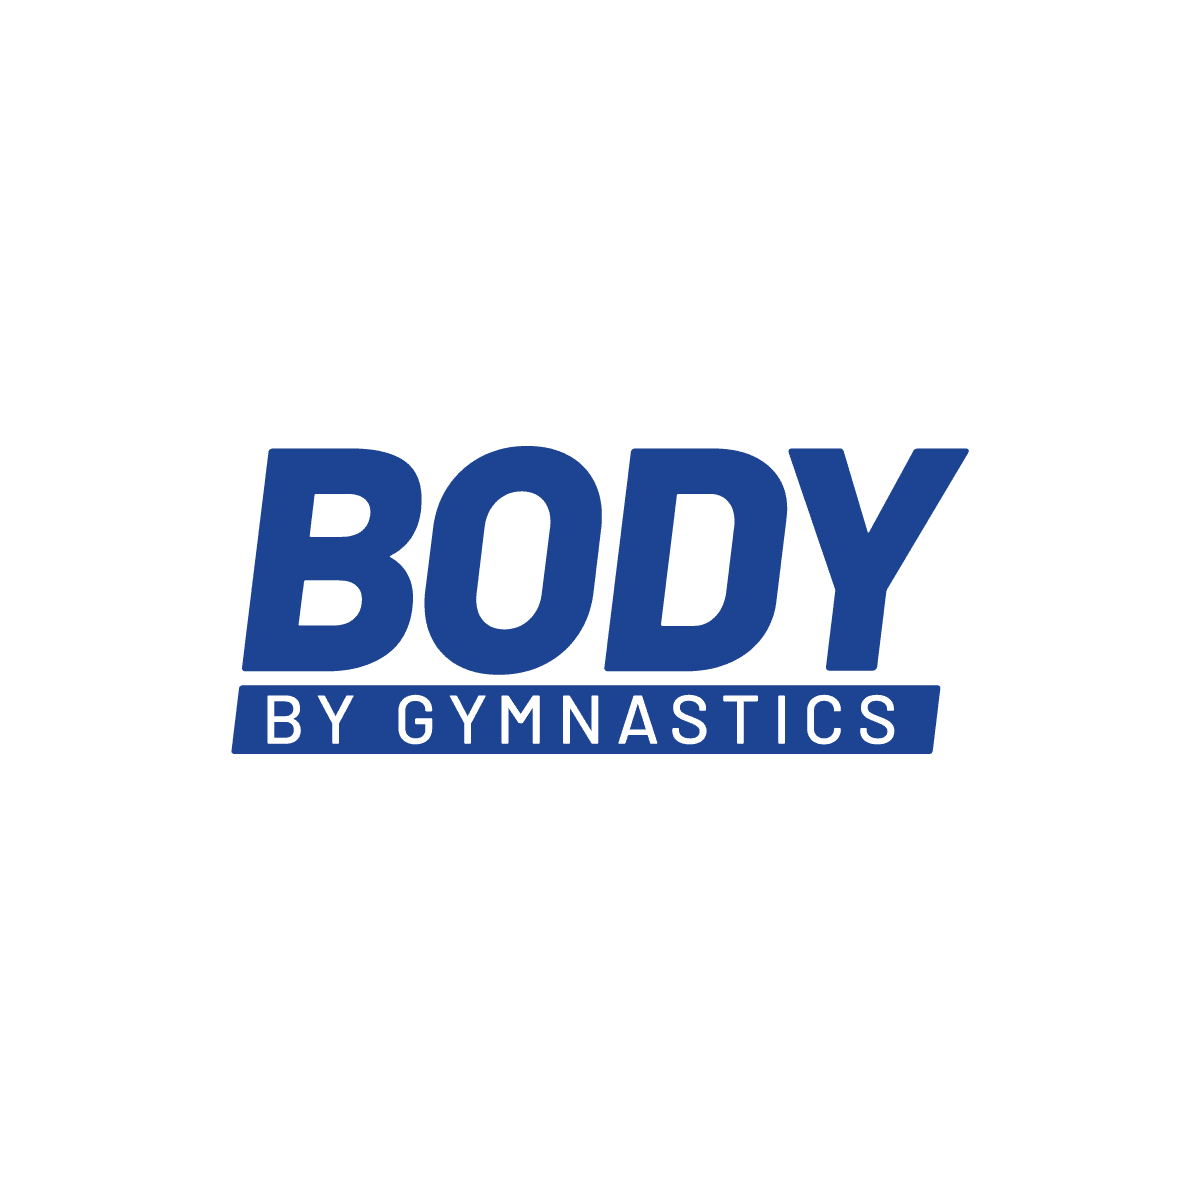 BODY BY GYMNASTICS